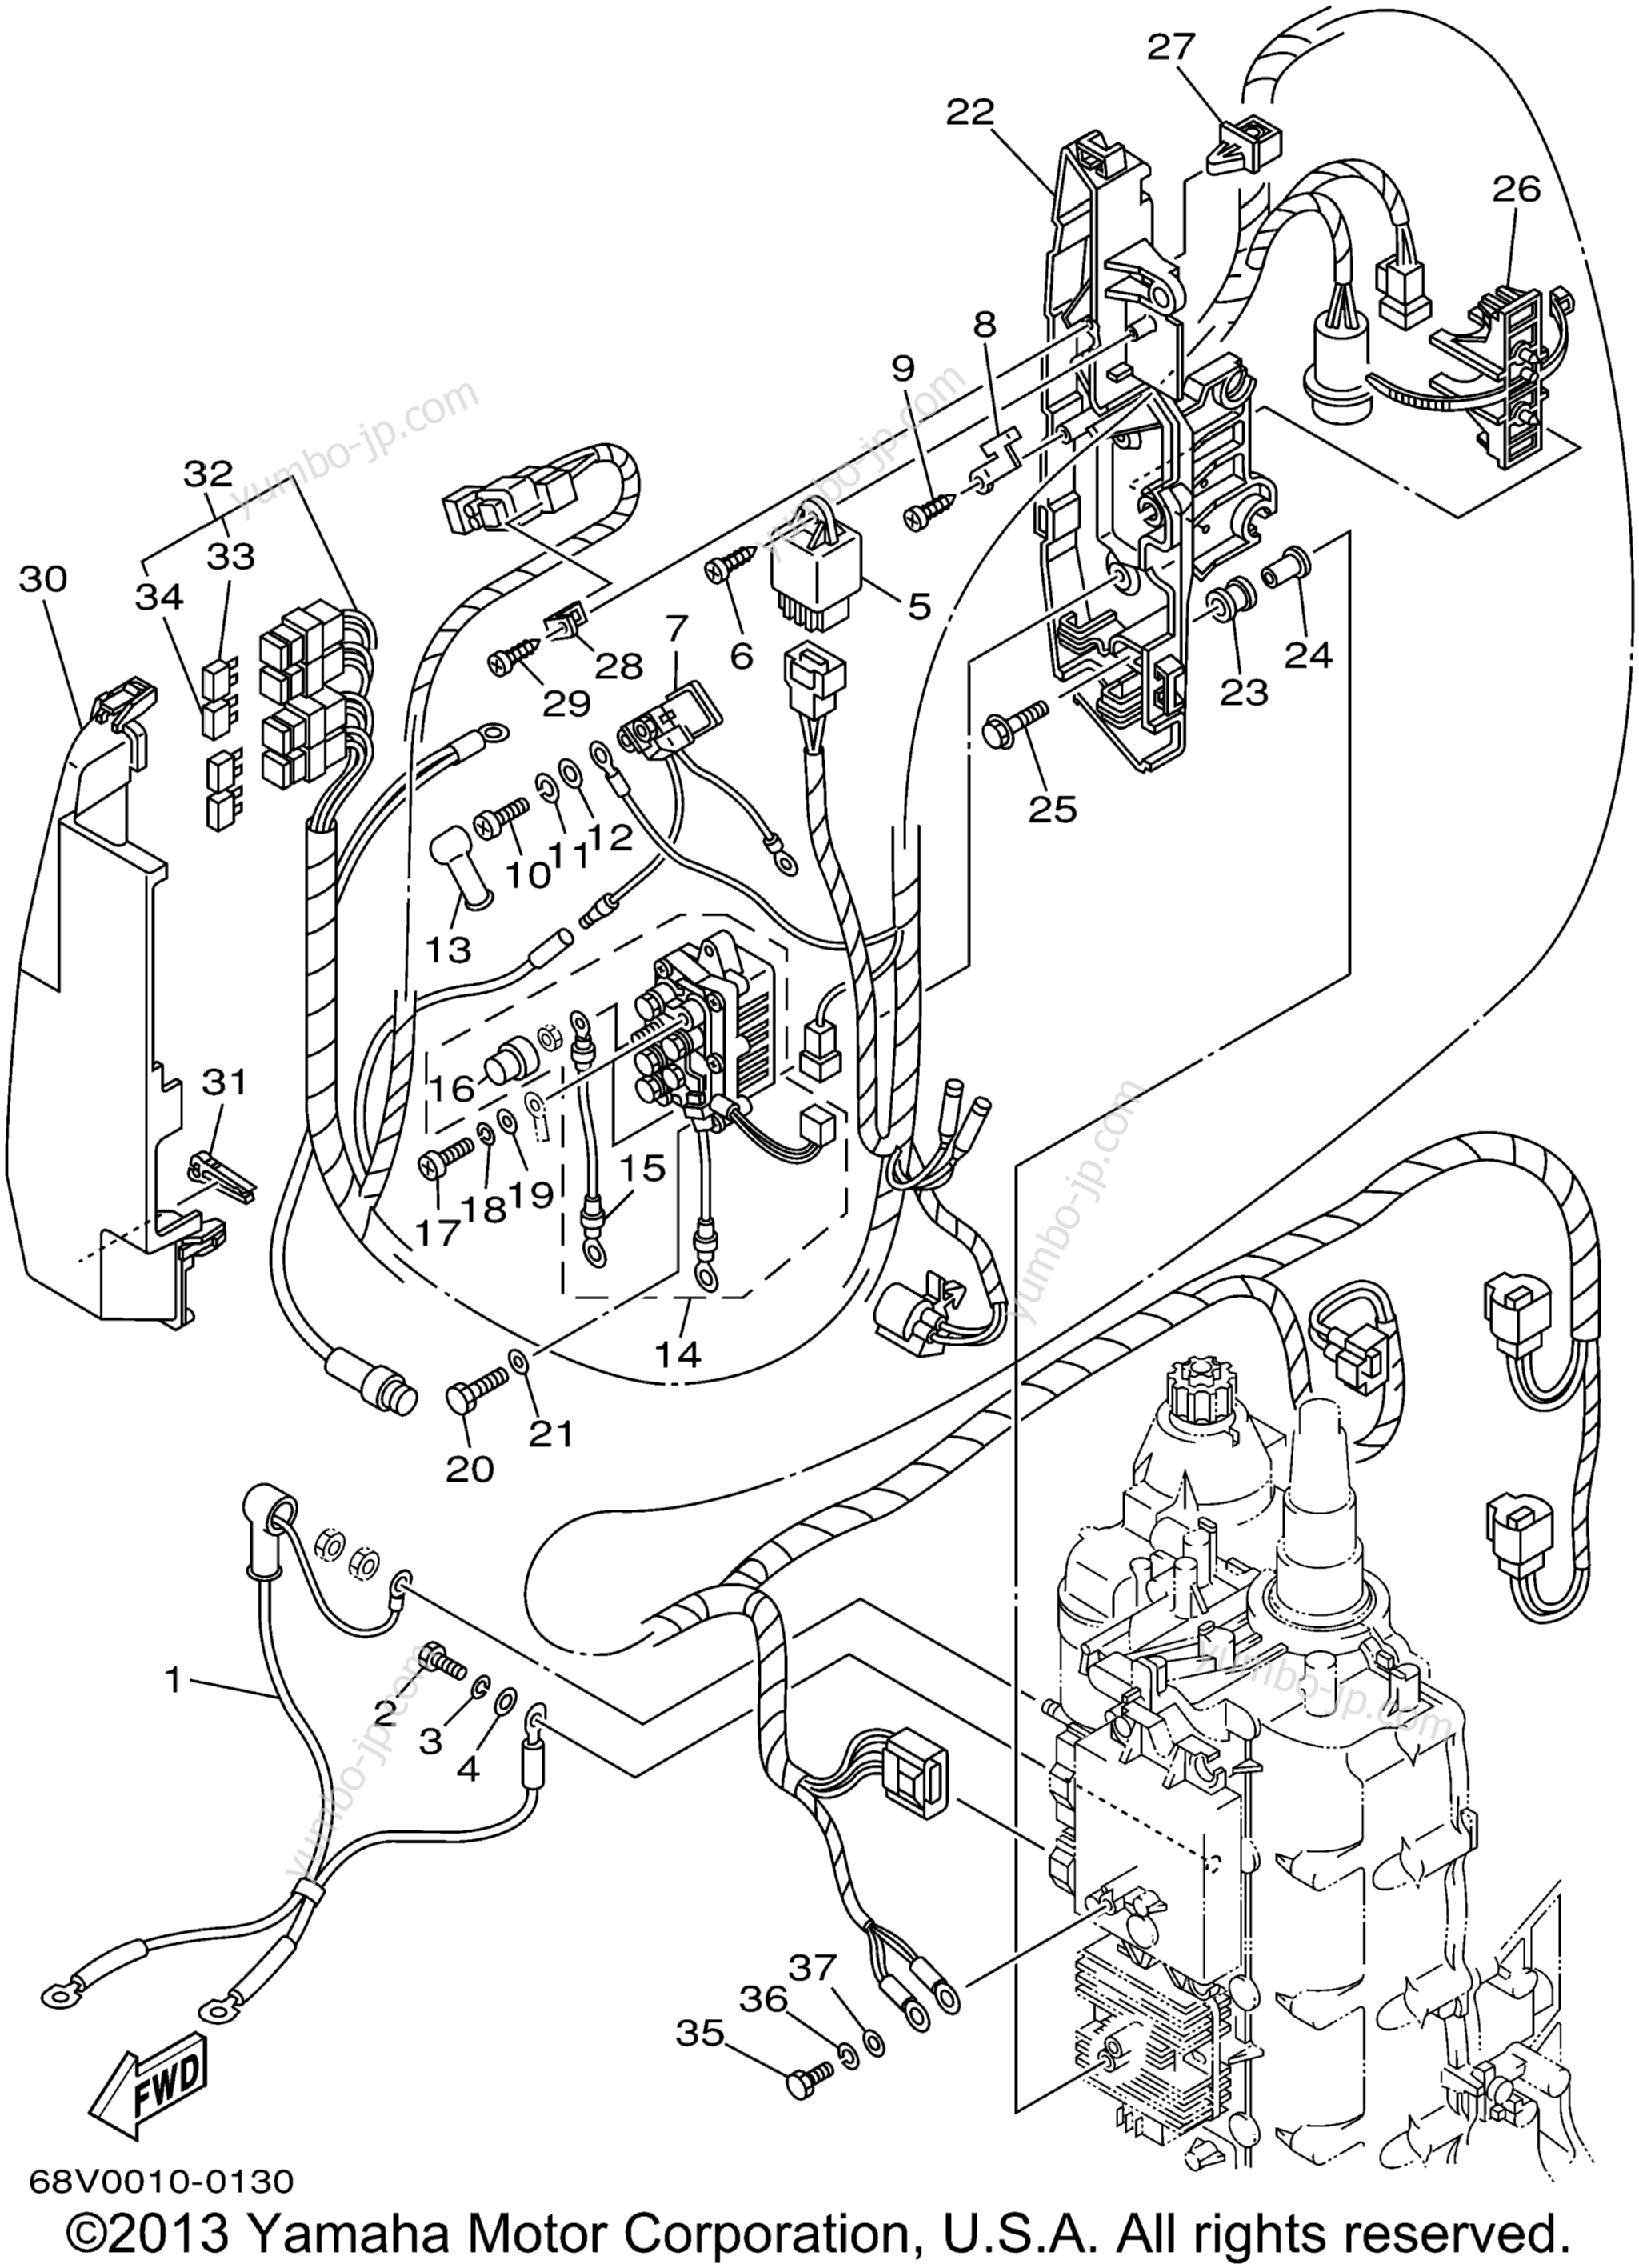 Electrical 2 для лодочных моторов YAMAHA LF115TXRZ 2001 г.